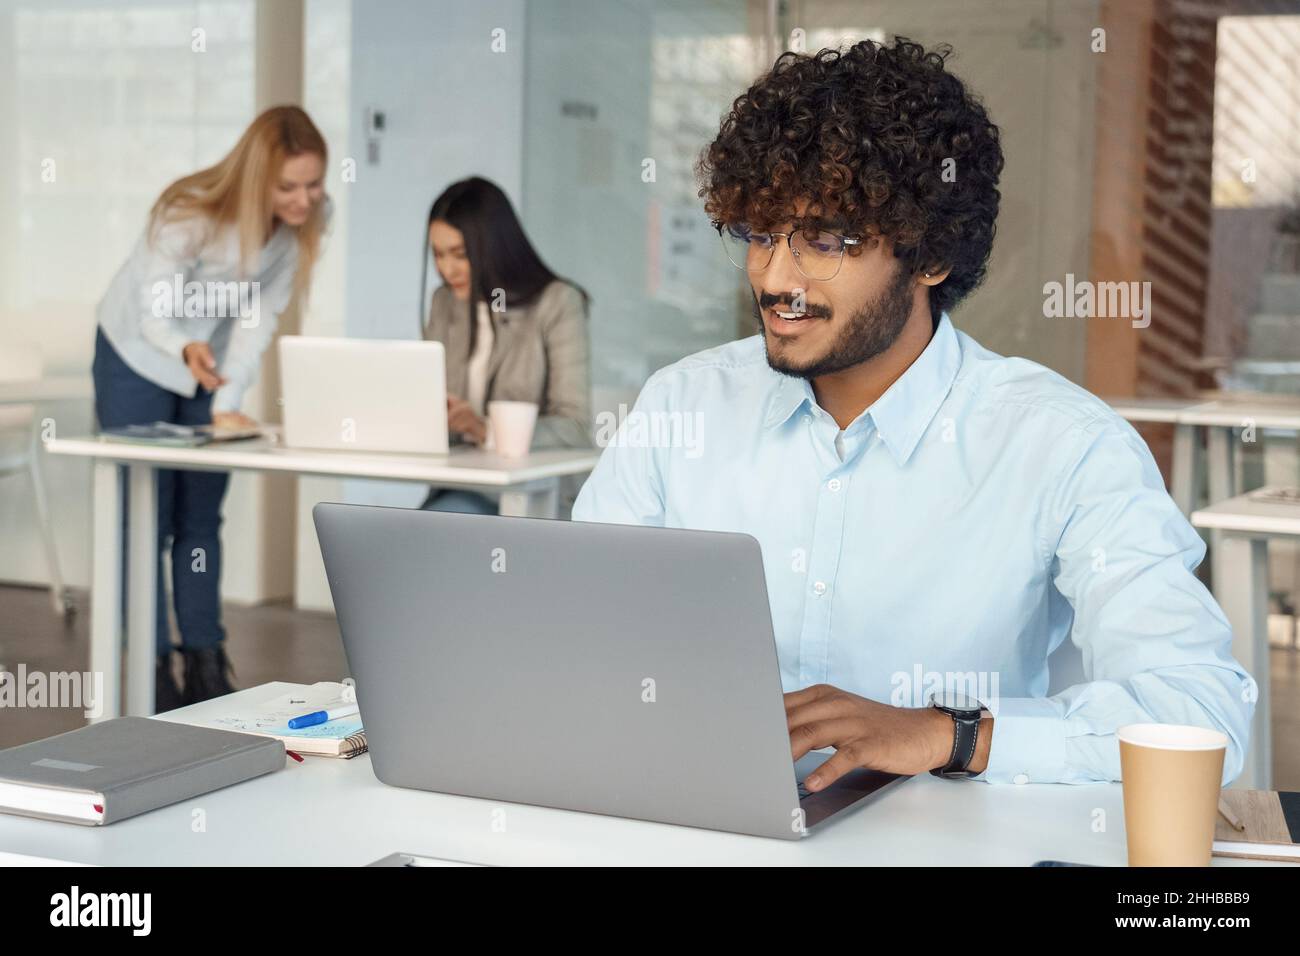 Un Indien très occupé travaille sur un ordinateur portable au bureau tandis que ses collègues réfléchissent en arrière-plan Banque D'Images